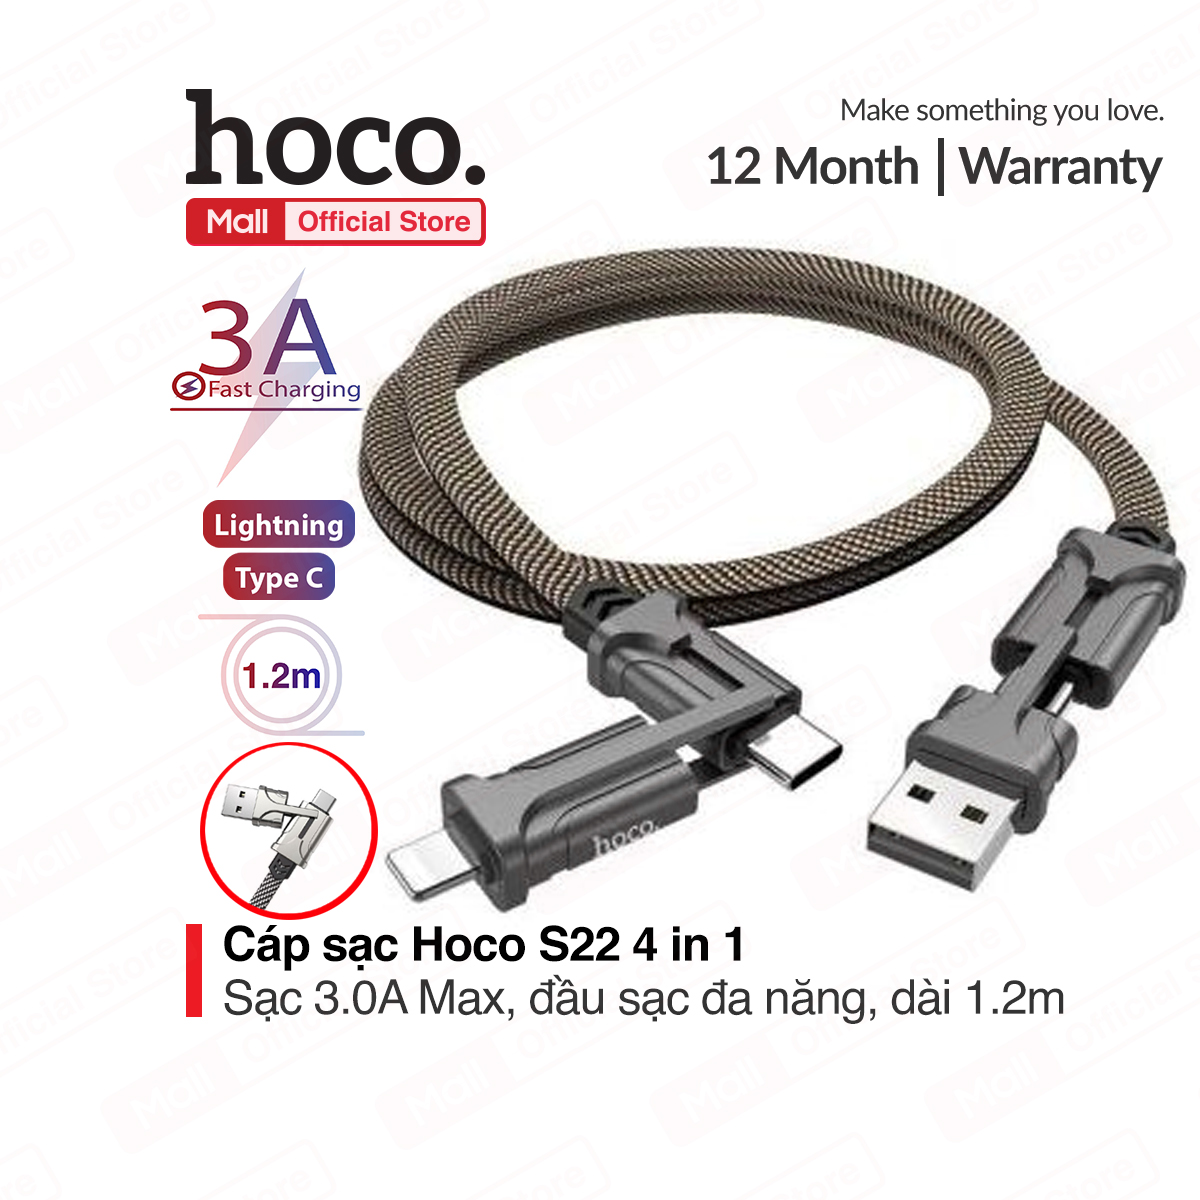 Cáp sạc Hoco S22 4 in1 sạc nhanh lên đến 3.0A Max 60W đầu sạc đa năng tháo lắp dễ dàng dây bện dù chống đứt dài 1.2m